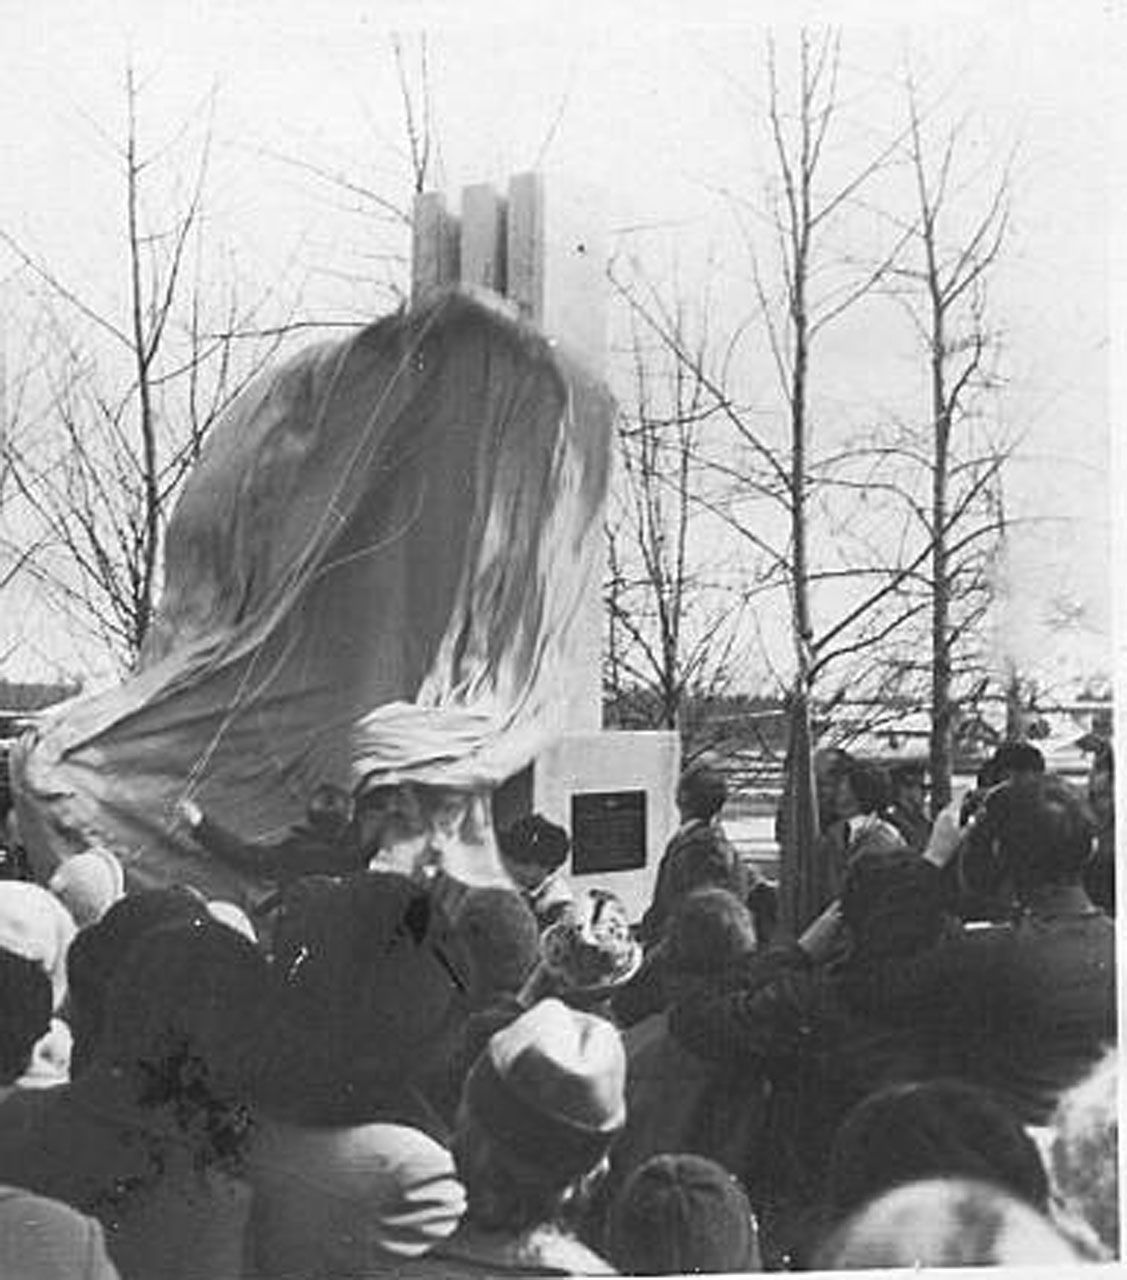 Открытие обелиска в память о военных лётчиках в сквере аэропорта Сеймчана. 1983 год.